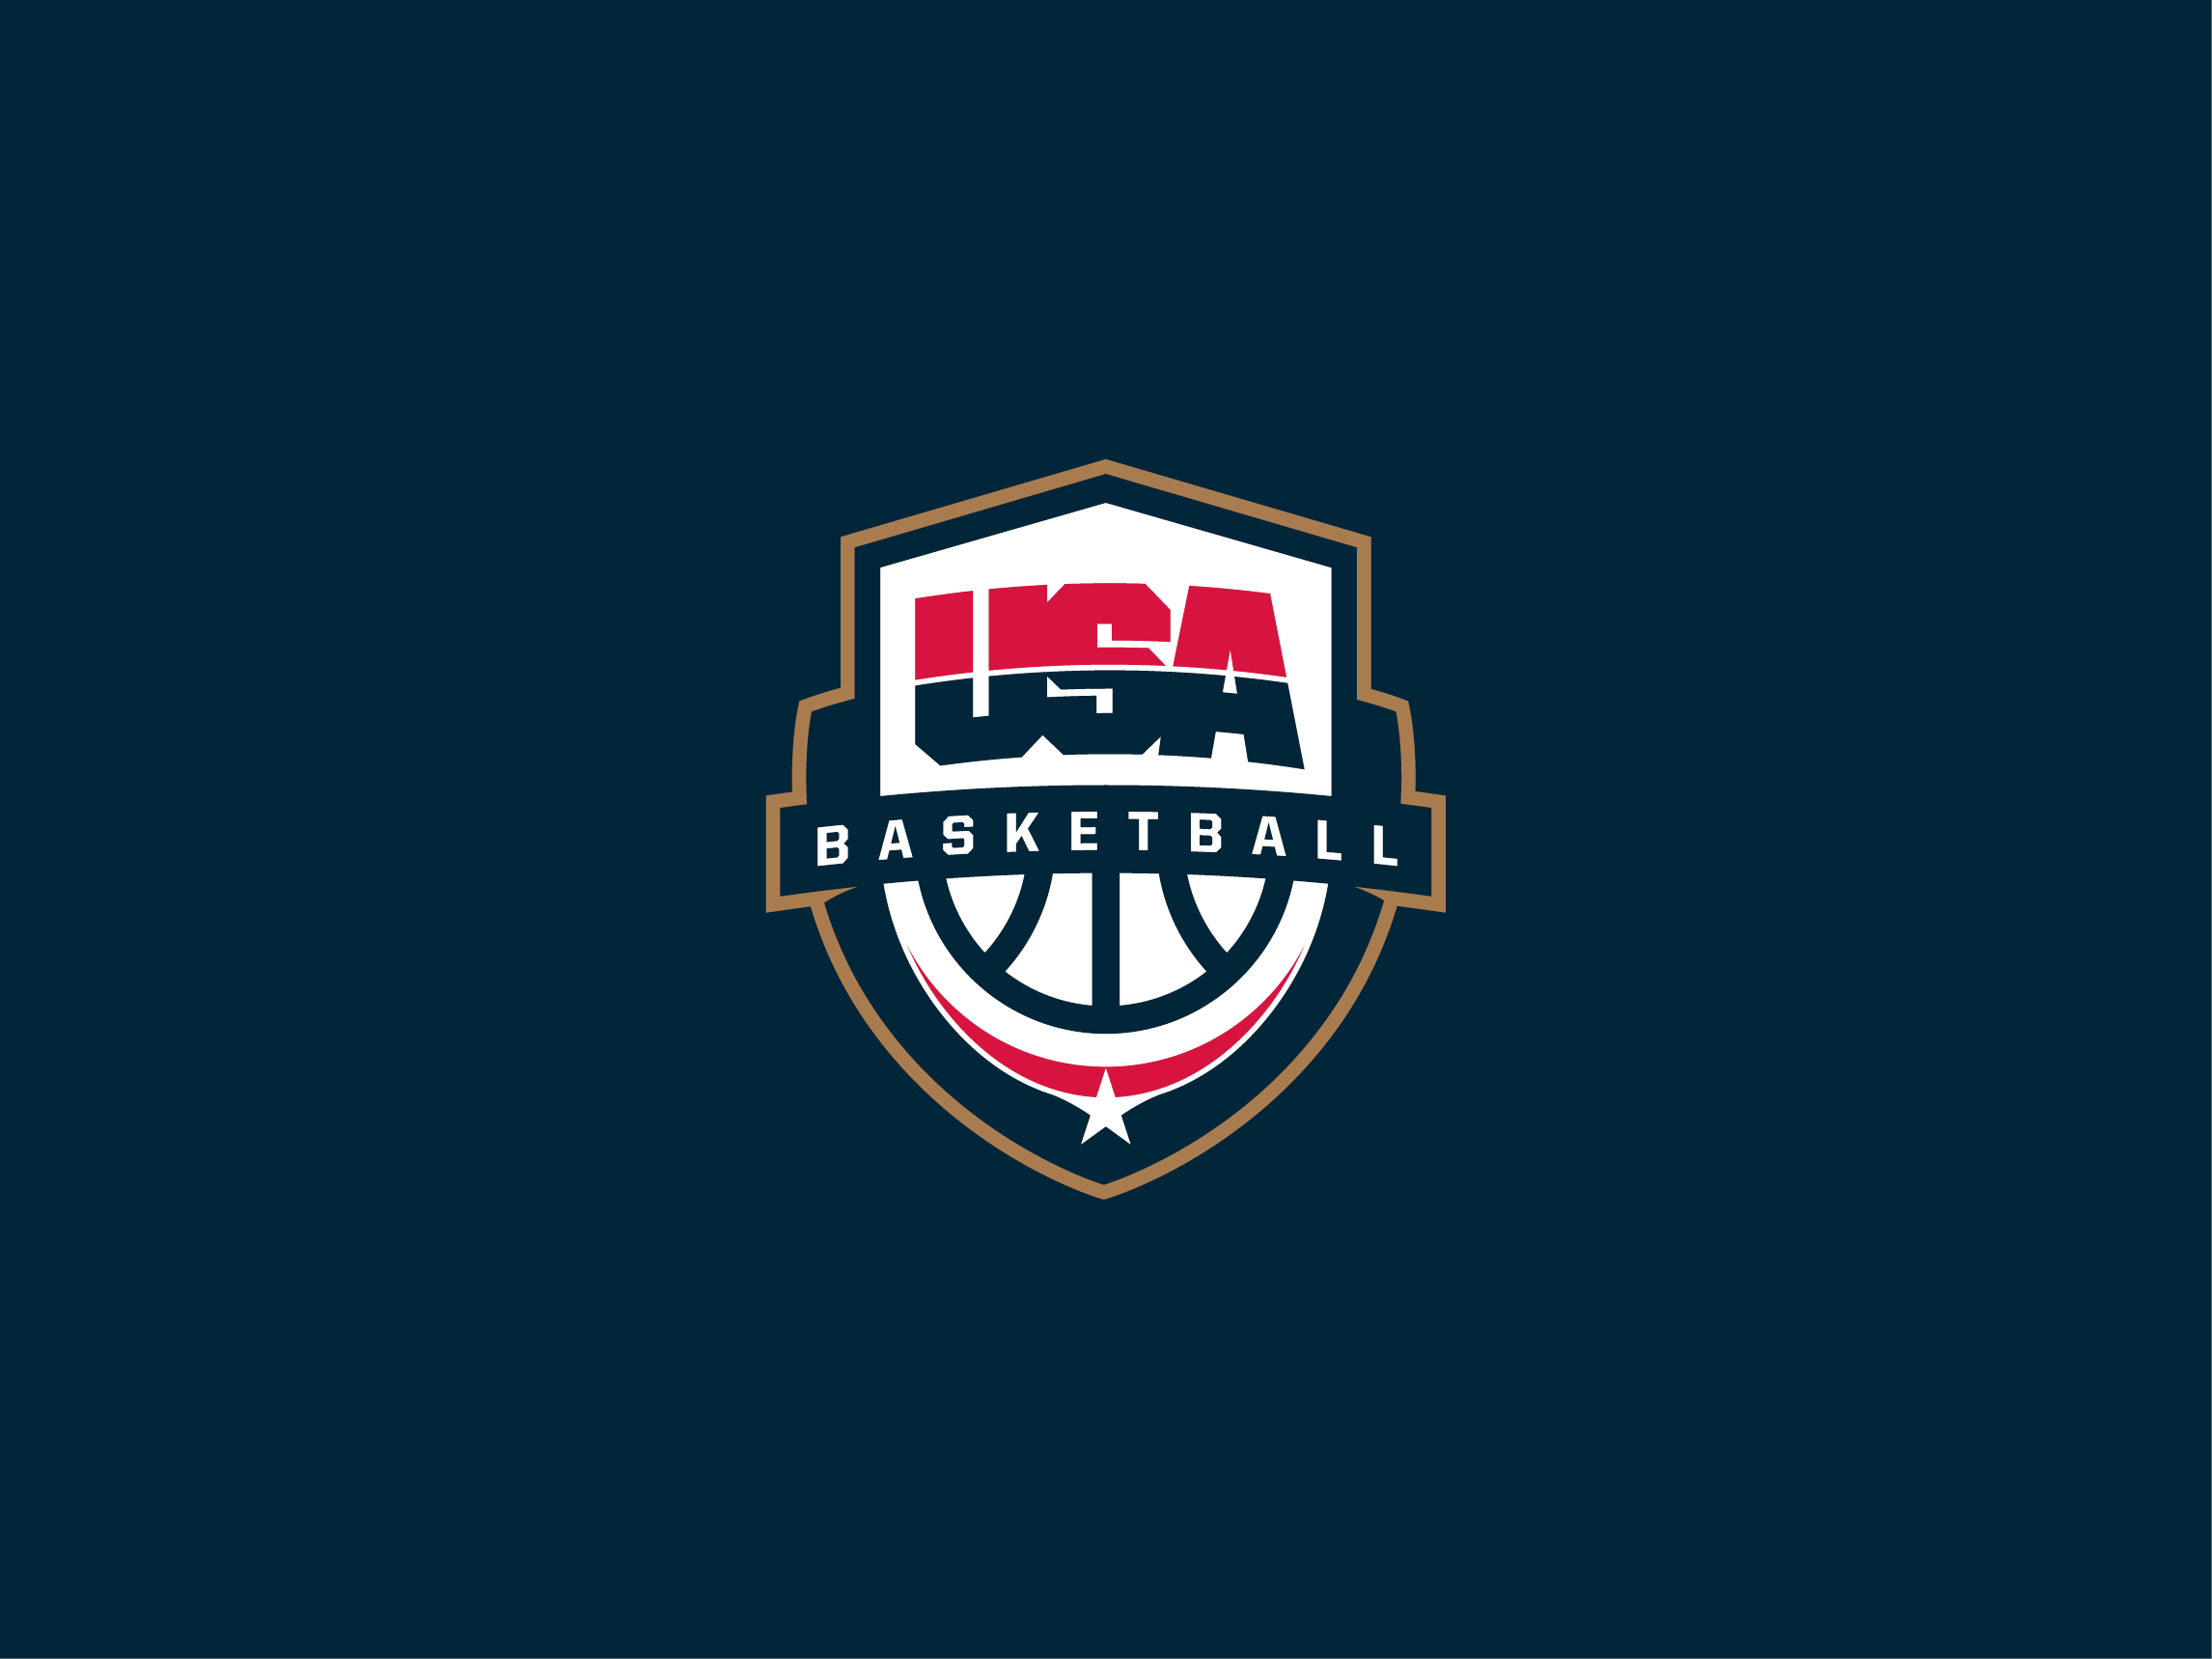 USA Basketball logo